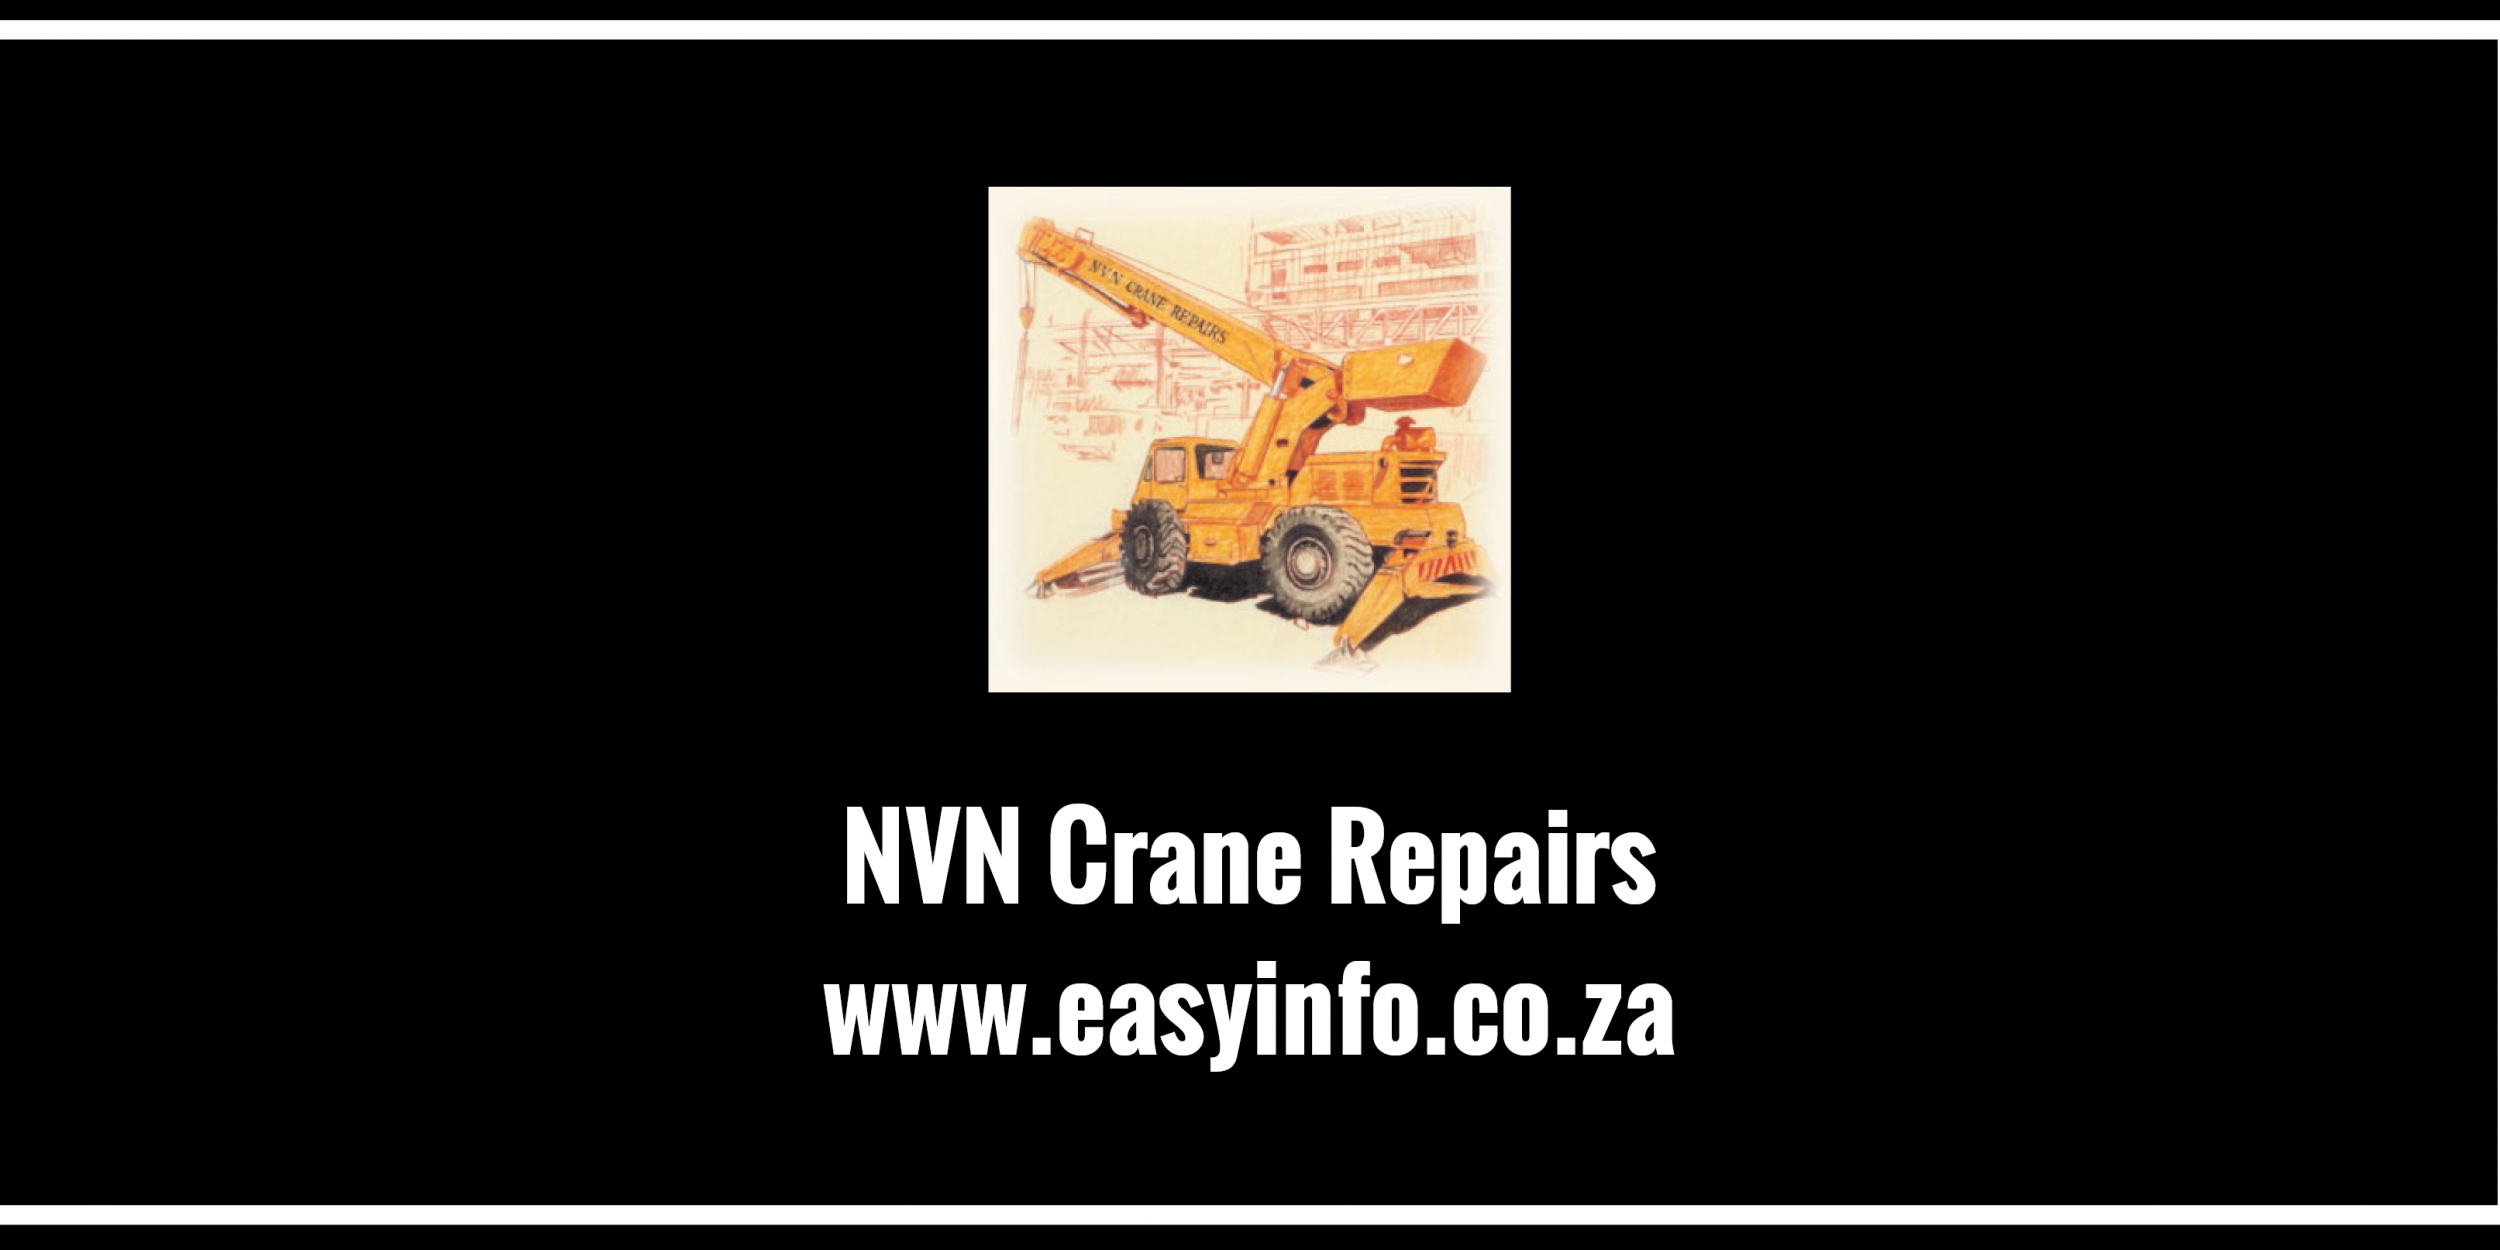 NVN Crane Repairs